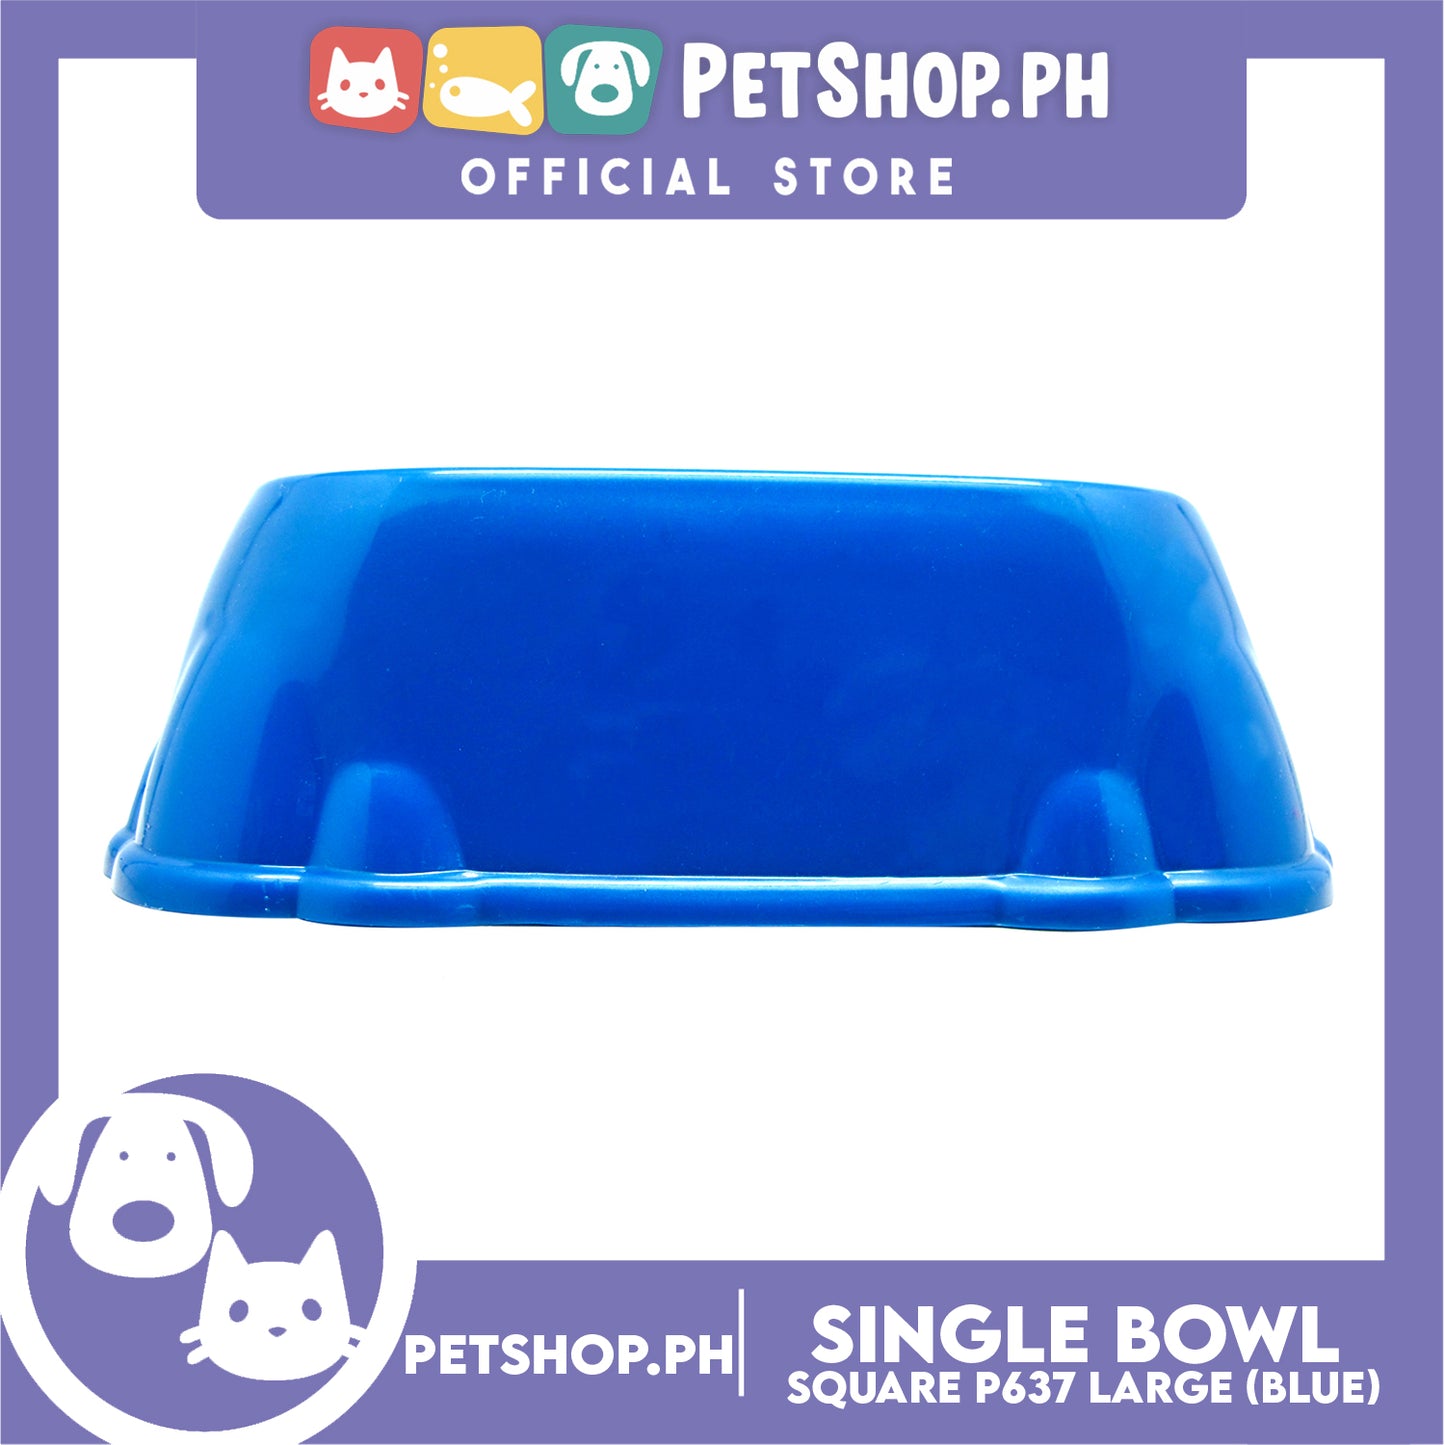 P637 Square Single Bowl Large Blue